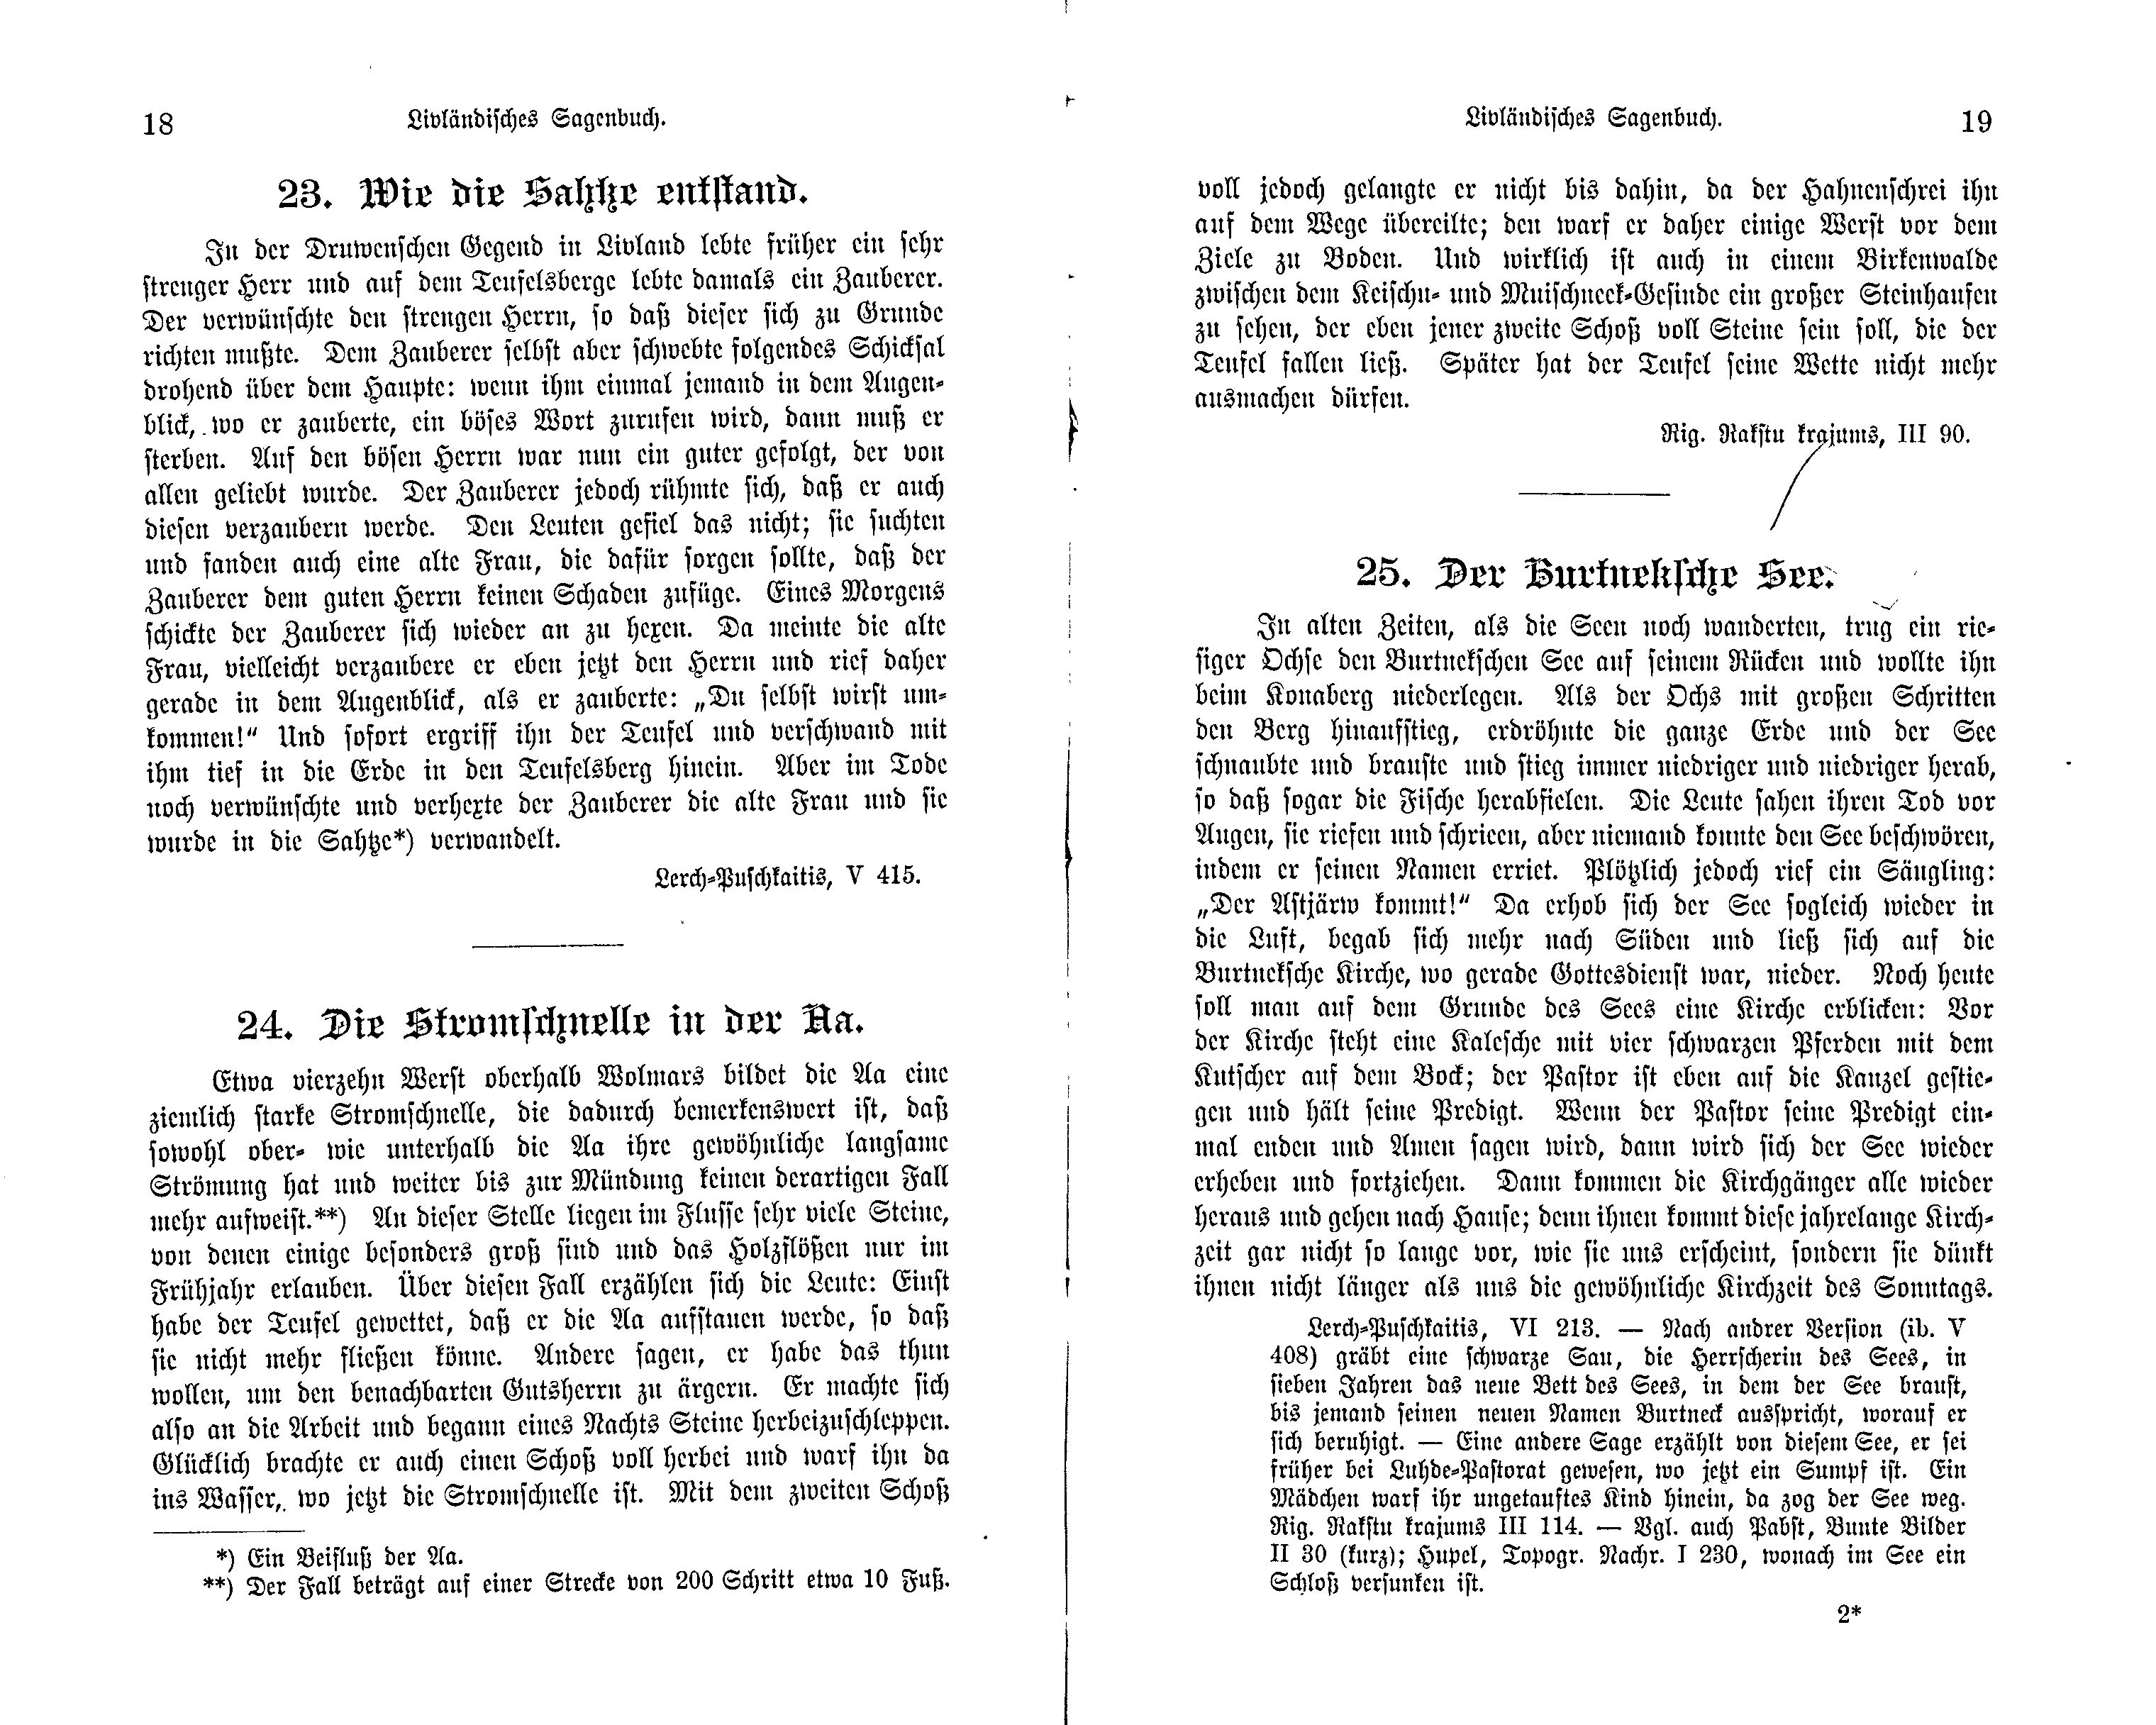 Die Stromschnelle in der Aa (1897) | 1. (18-19) Main body of text